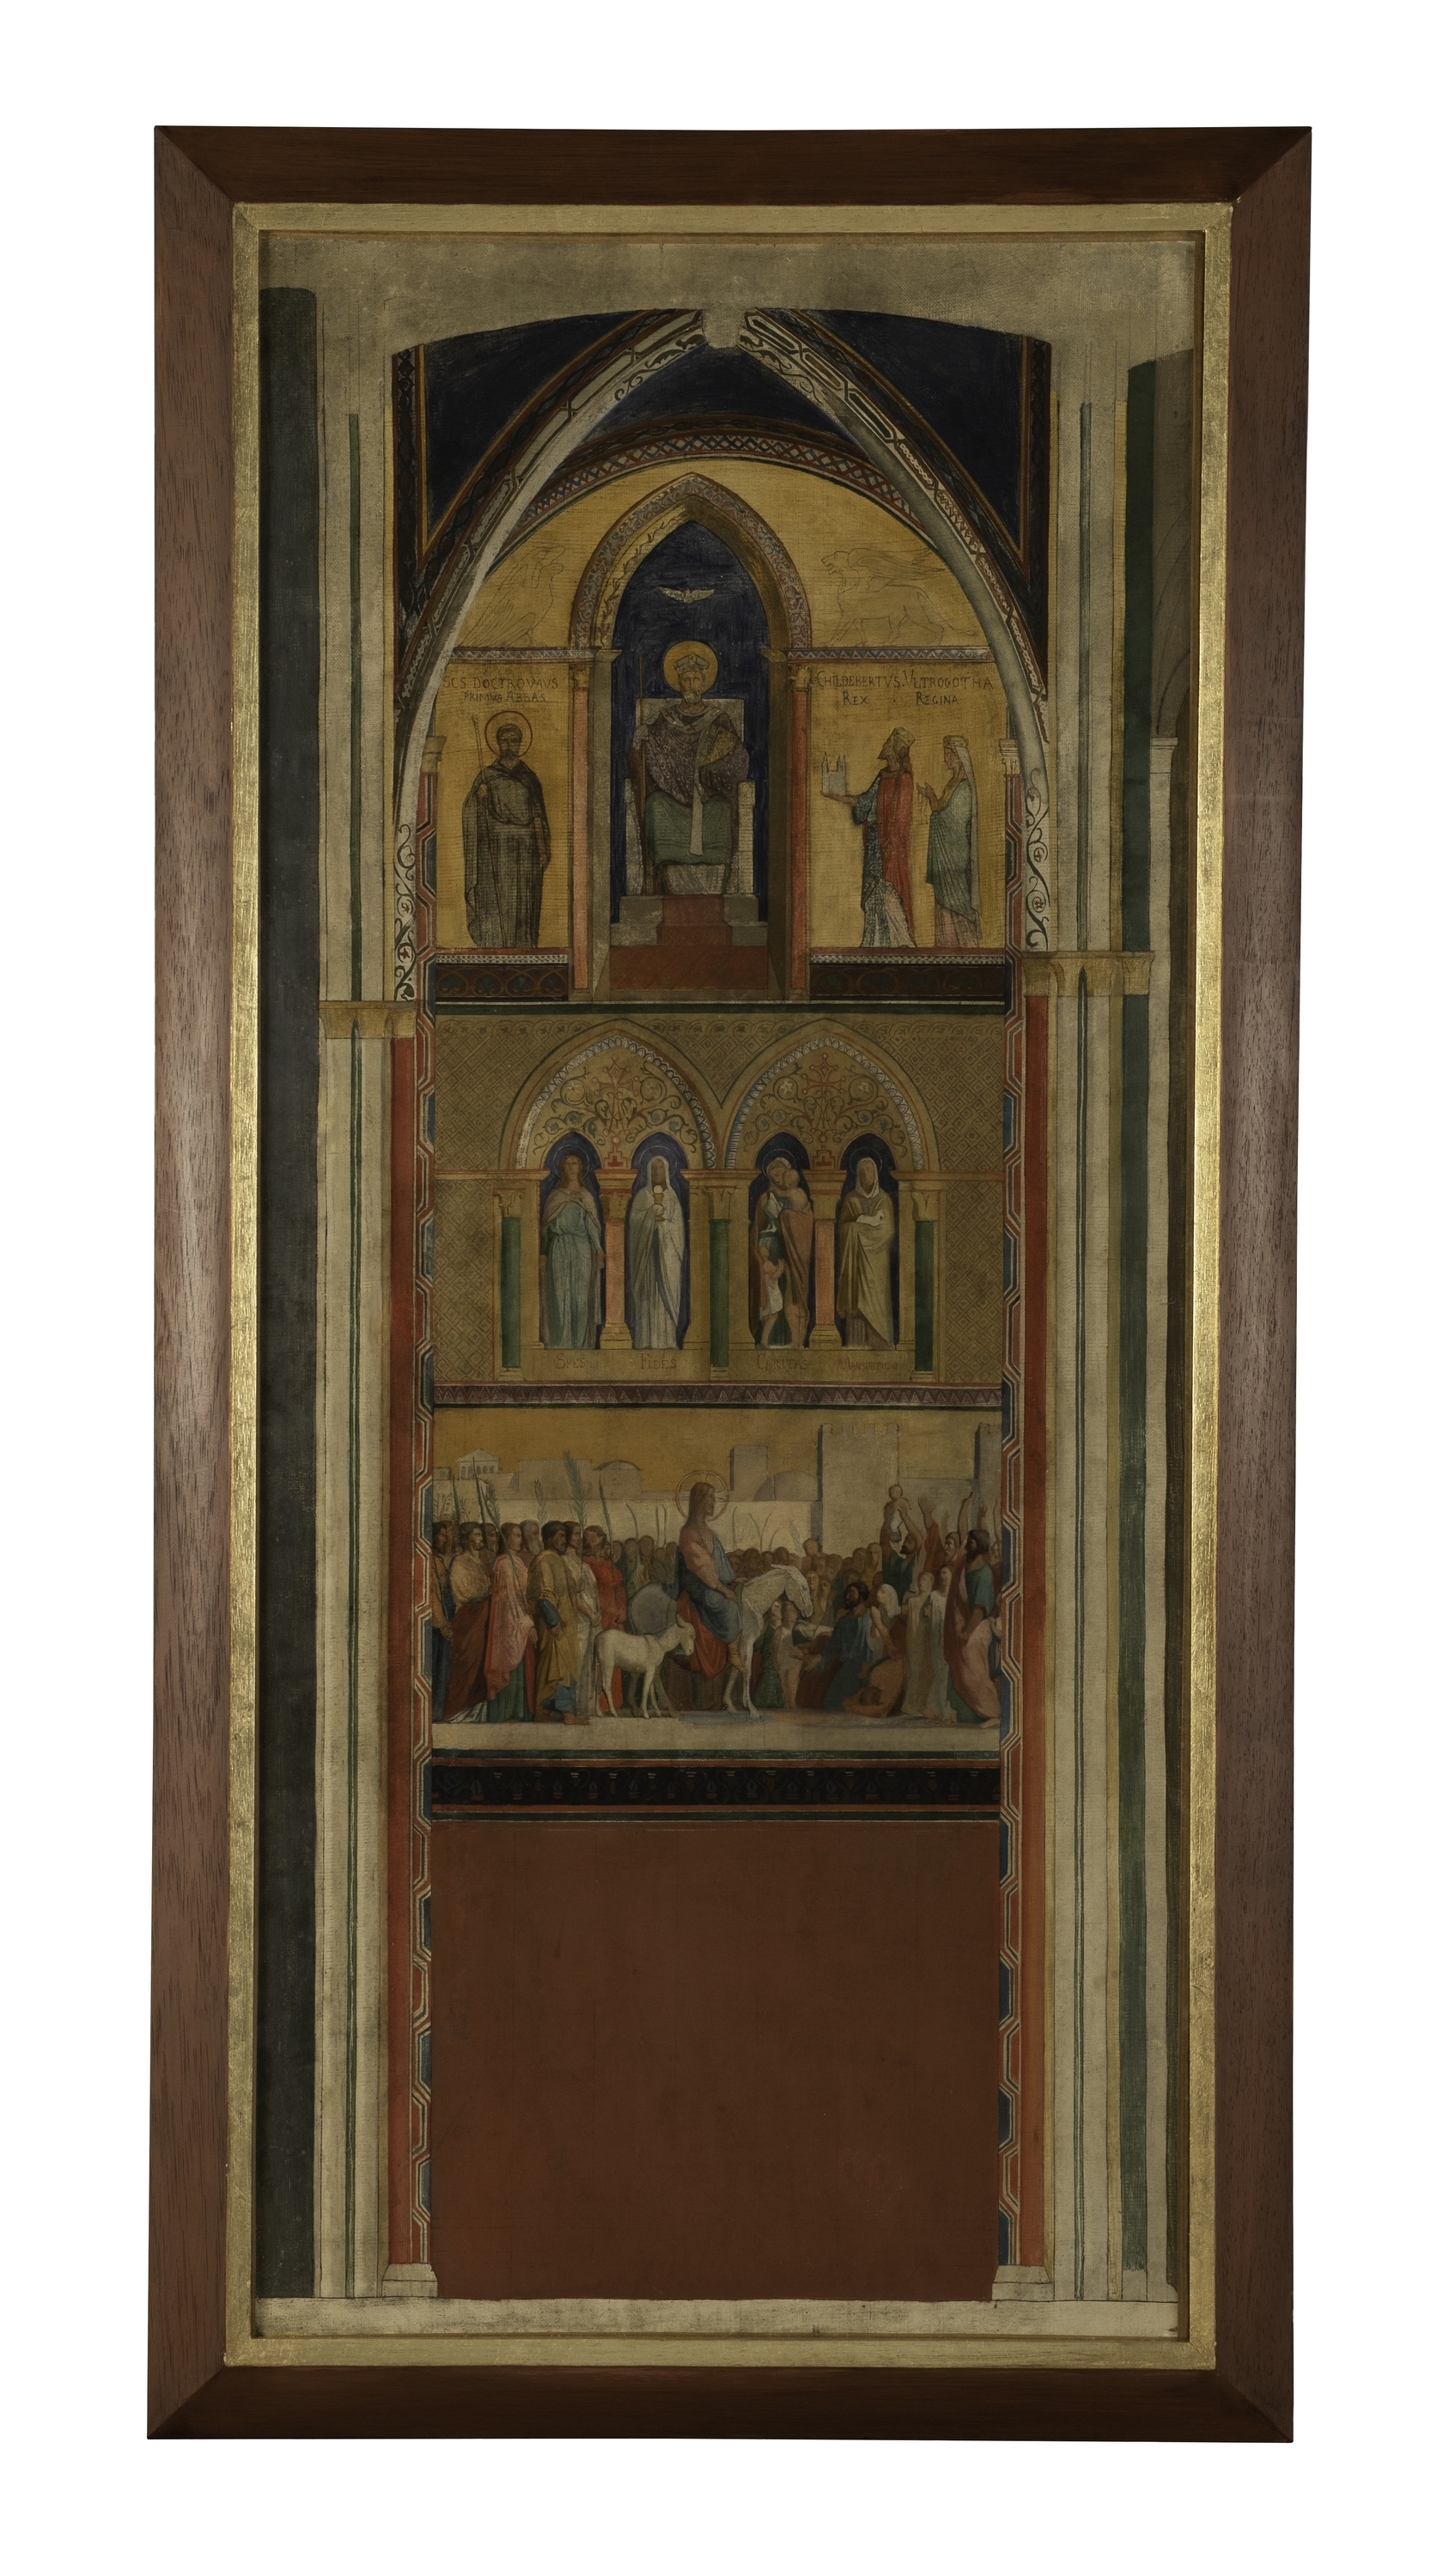 Flandrin, Modello de présentation du décor du mur gauche de l'église Saint-Germain des Prés